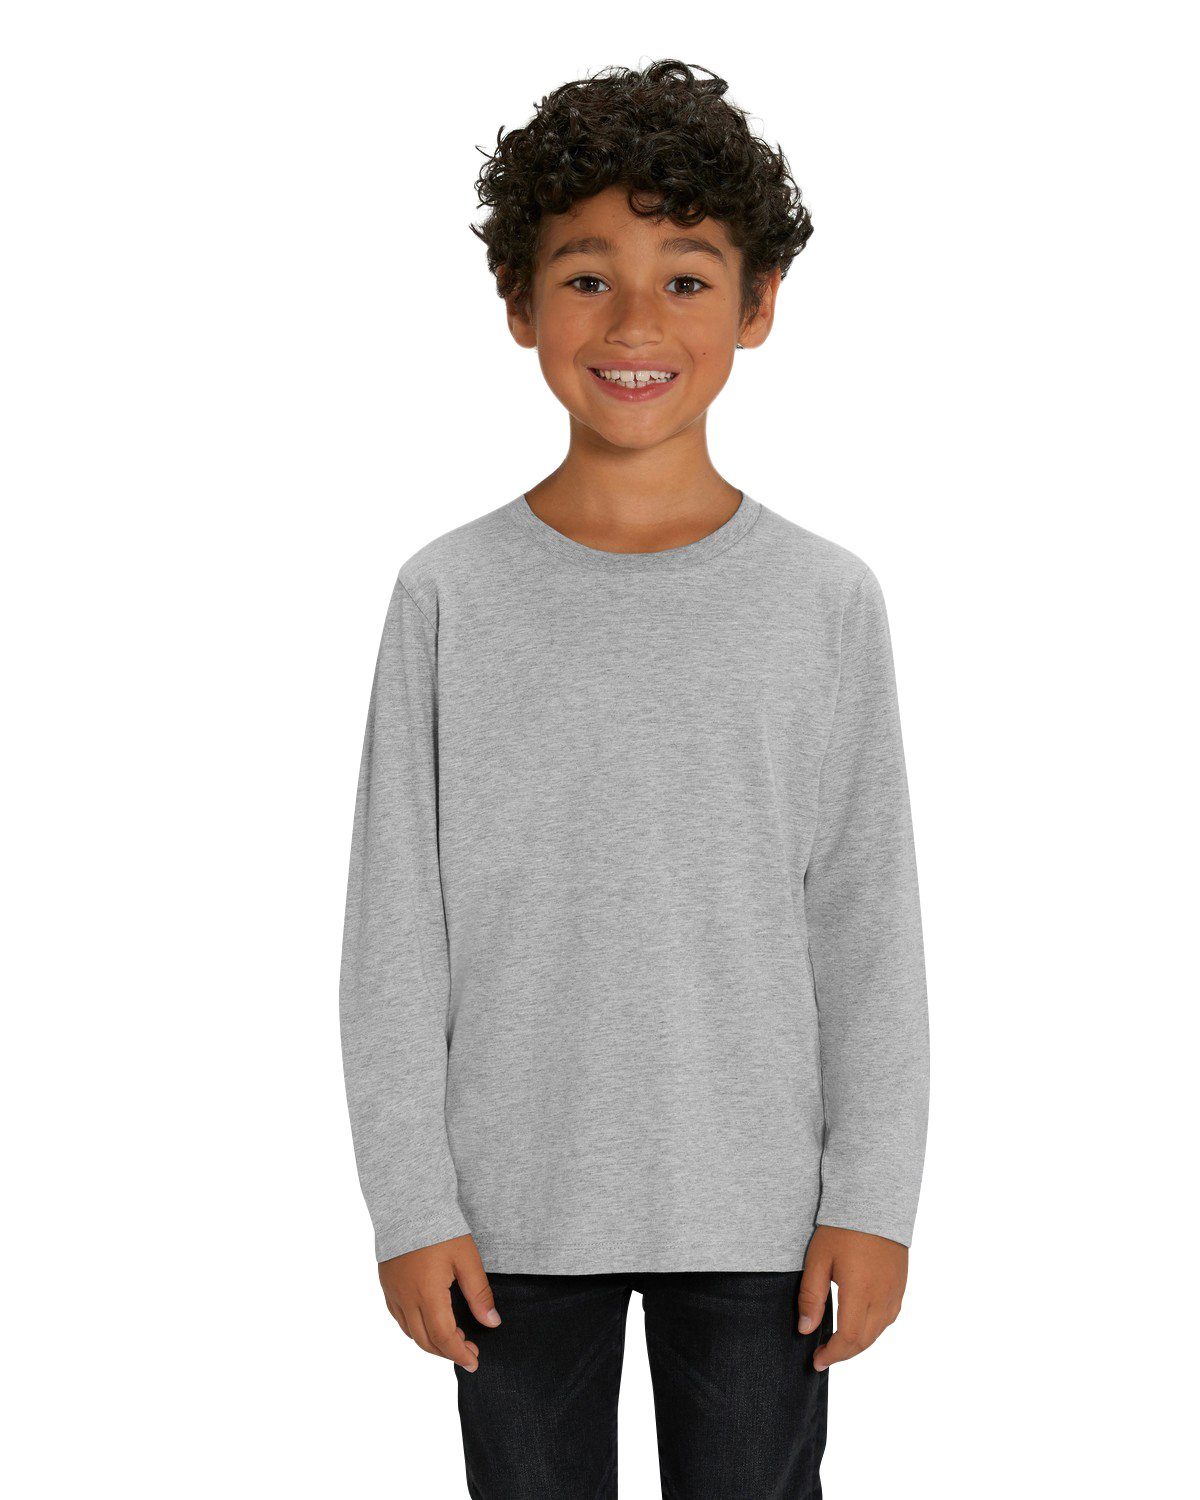 Hilltop T-Shirt Hochwertiges Kinder Langarmshirt /100% Bio-Baumwolle für  Mädchen und Jungen. Eignet sich hervorragend zum bedrucken. (z.B.: mit  Transfer-Folien/Textilfolien)